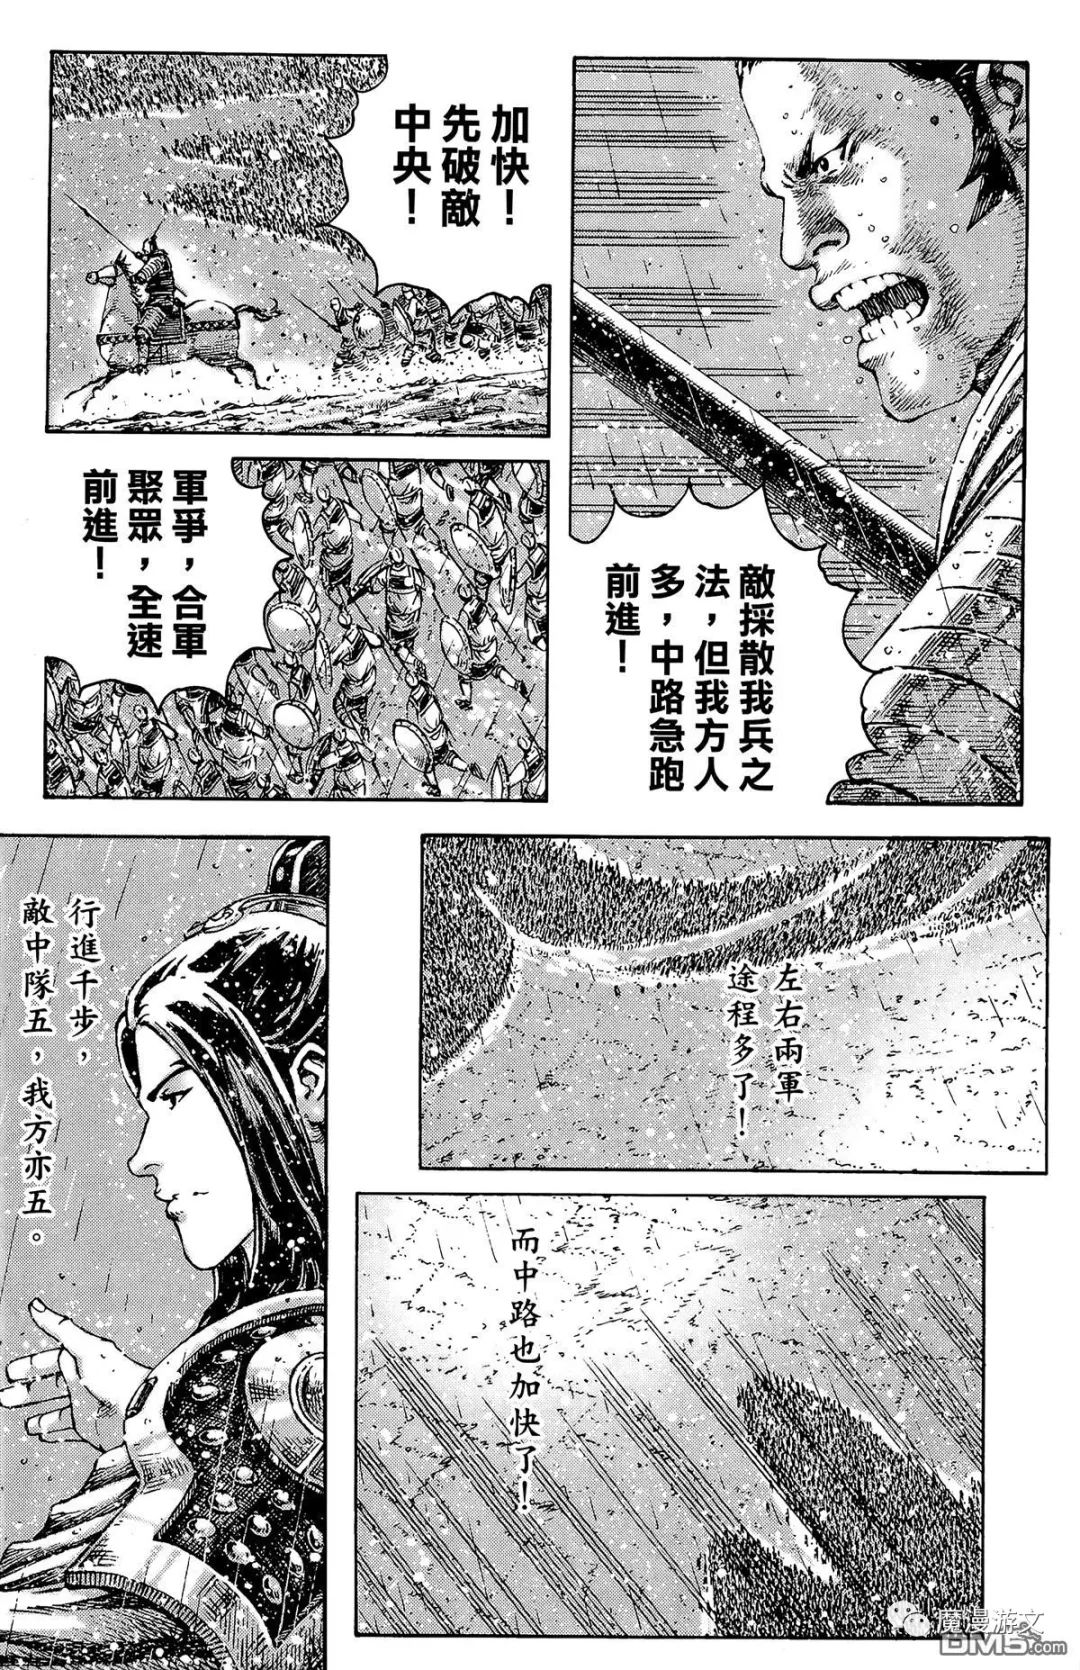 《火鳳燎原》第三十三卷 戲劇 第108張